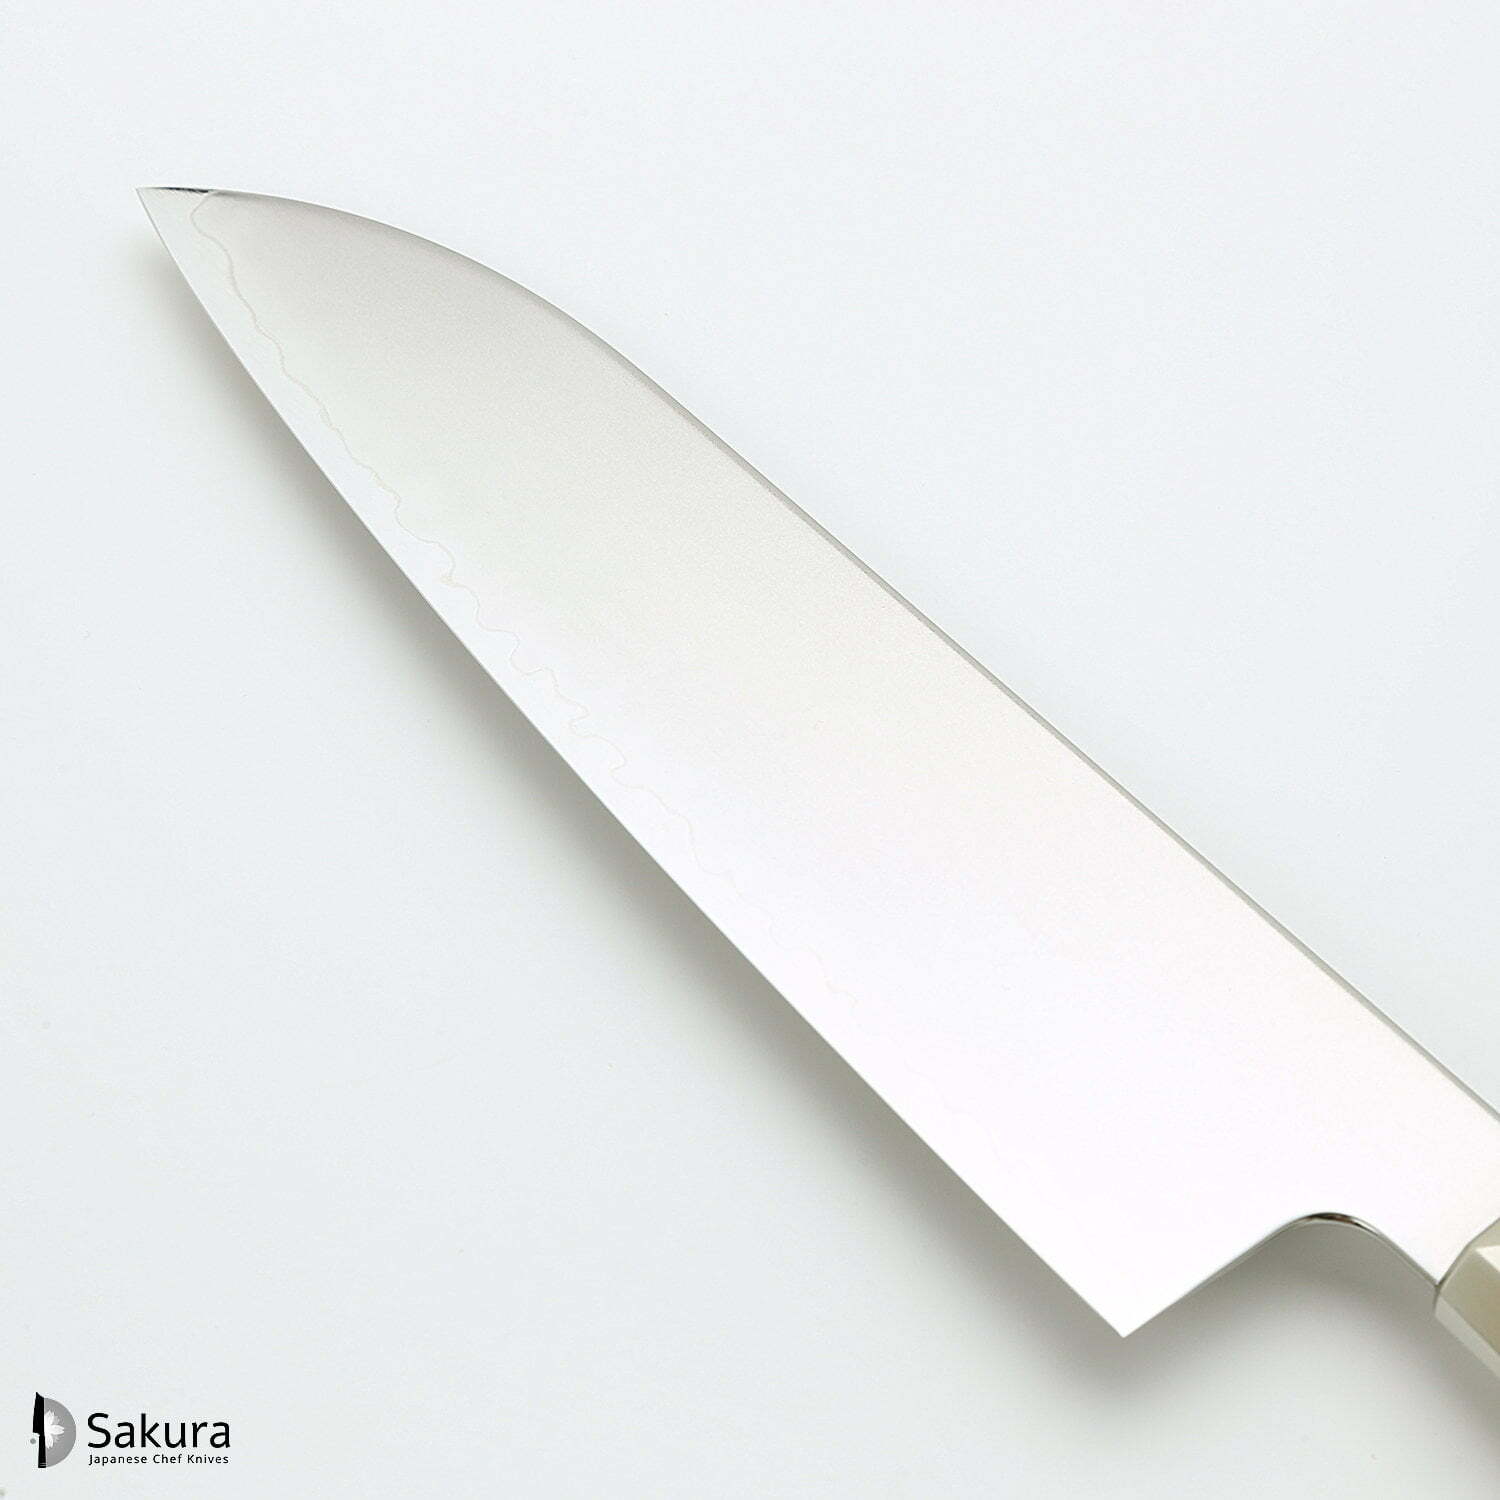 סכין רב-תכליתית סָנטוֹקוּ 180מ״מ מחושלת בעבודת יד 3 שכבות: פלדת פחמן יפנית מתקדמת מסוג R2/SG2 עטופה פלדת אל-חלד גימור מט מלוטש מקוסטה זאנמאיי יפן ZRR-1203G